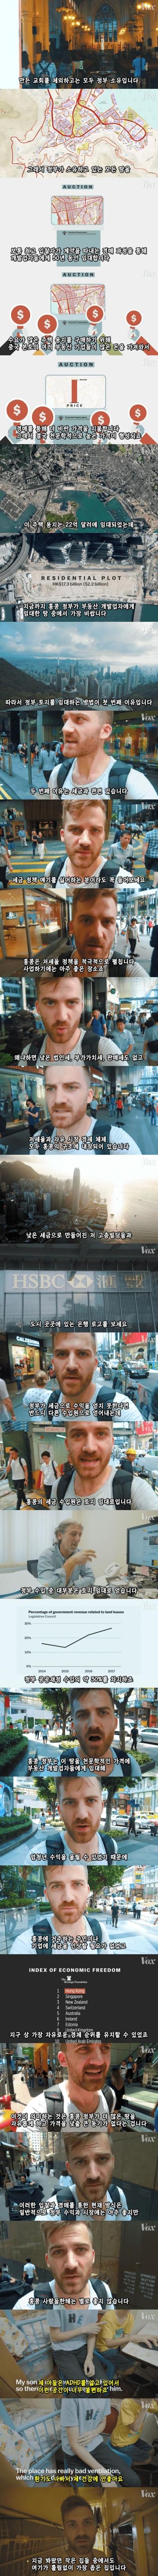 Internet_20240417_141428_3.jpeg 극악한 홍콩의 집값